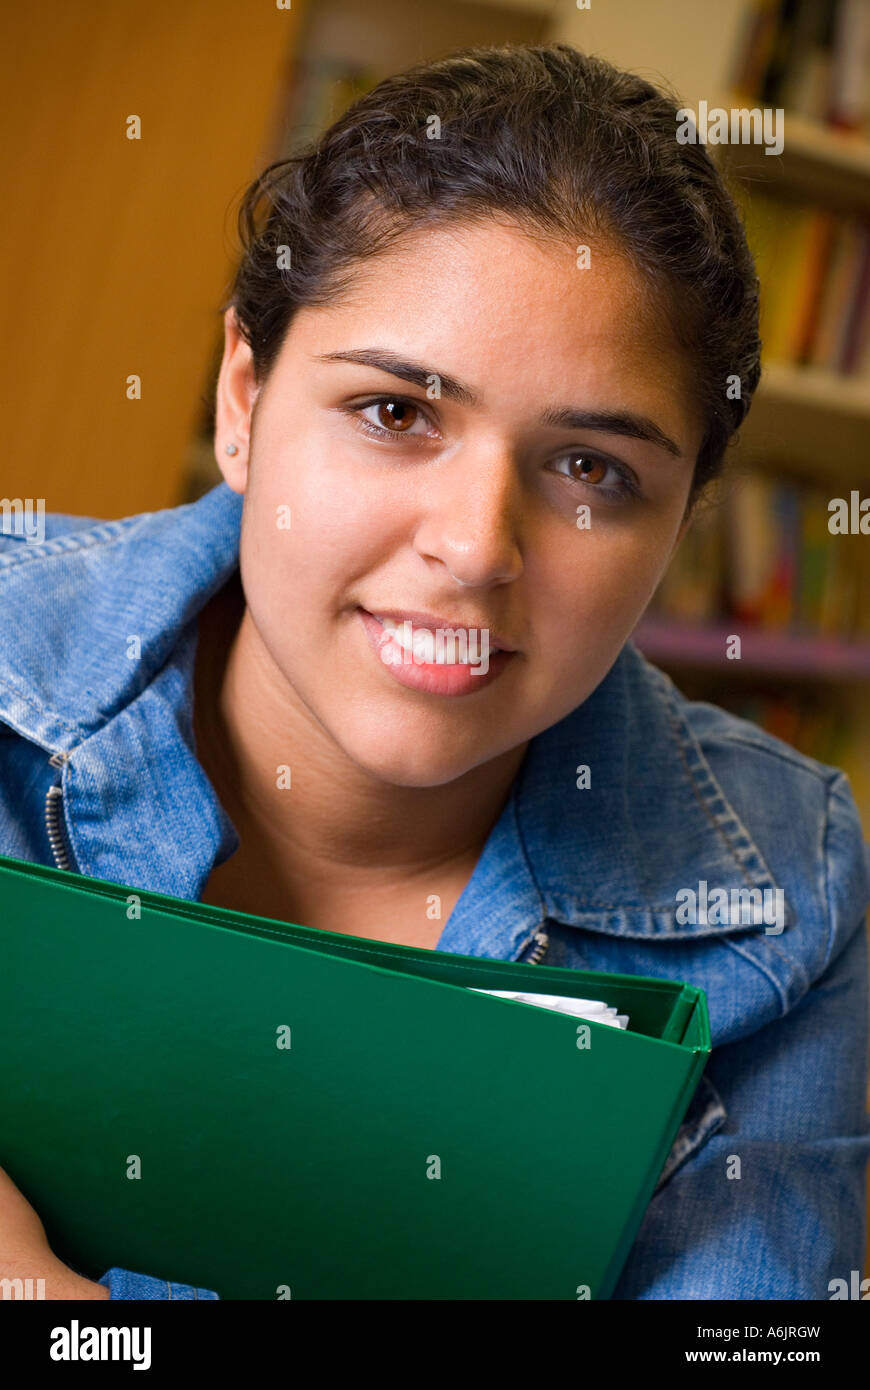 STUDENTESSA etnica asiatica faccia adolescente ragazza studentessa 14-16 anni con la sua cartella di studio fiducioso attraente ritratto sorridente nella biblioteca di riferimento della scuola Foto Stock